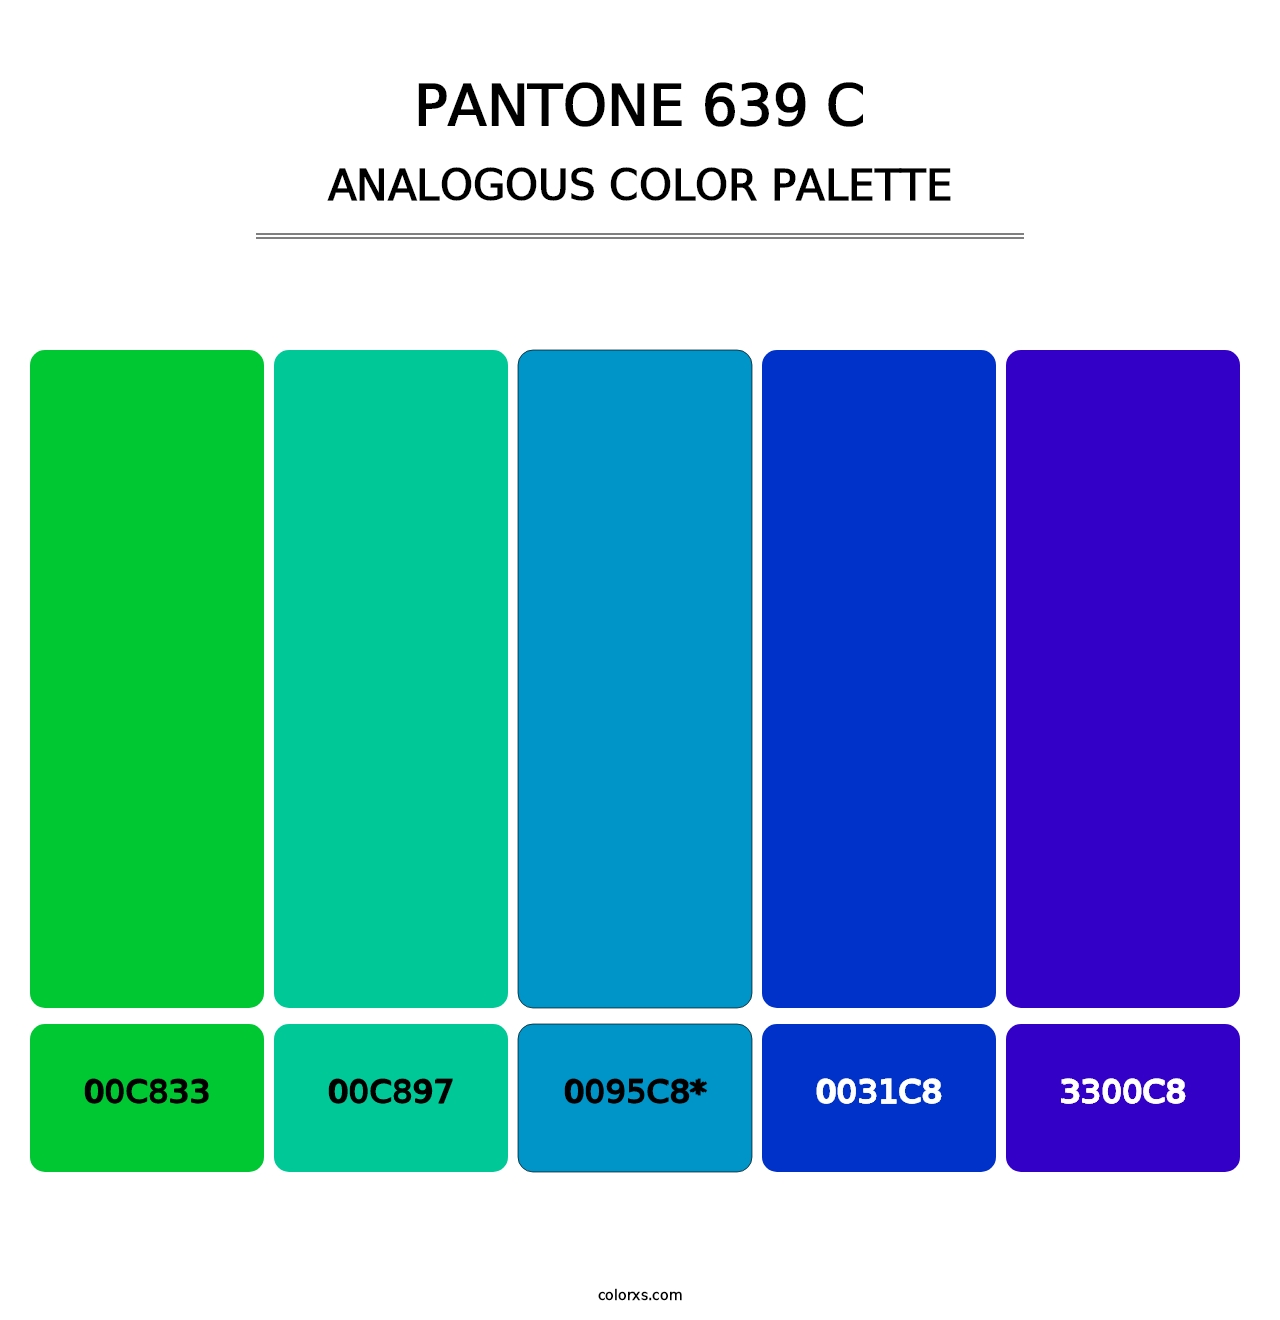 PANTONE 639 C - Analogous Color Palette